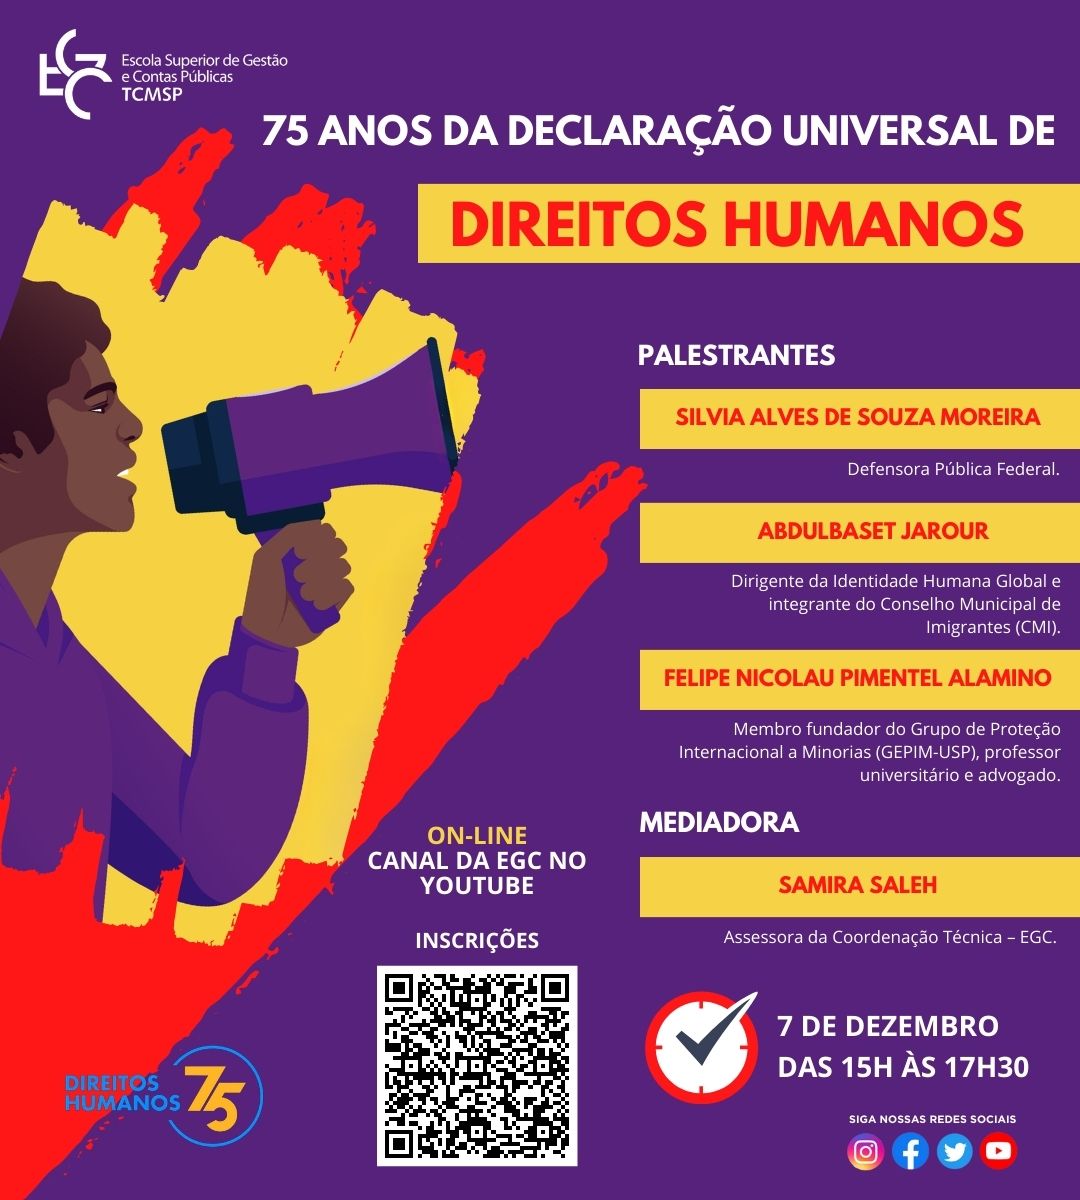 75 anos da declaracao universal de direitos humanos flyer